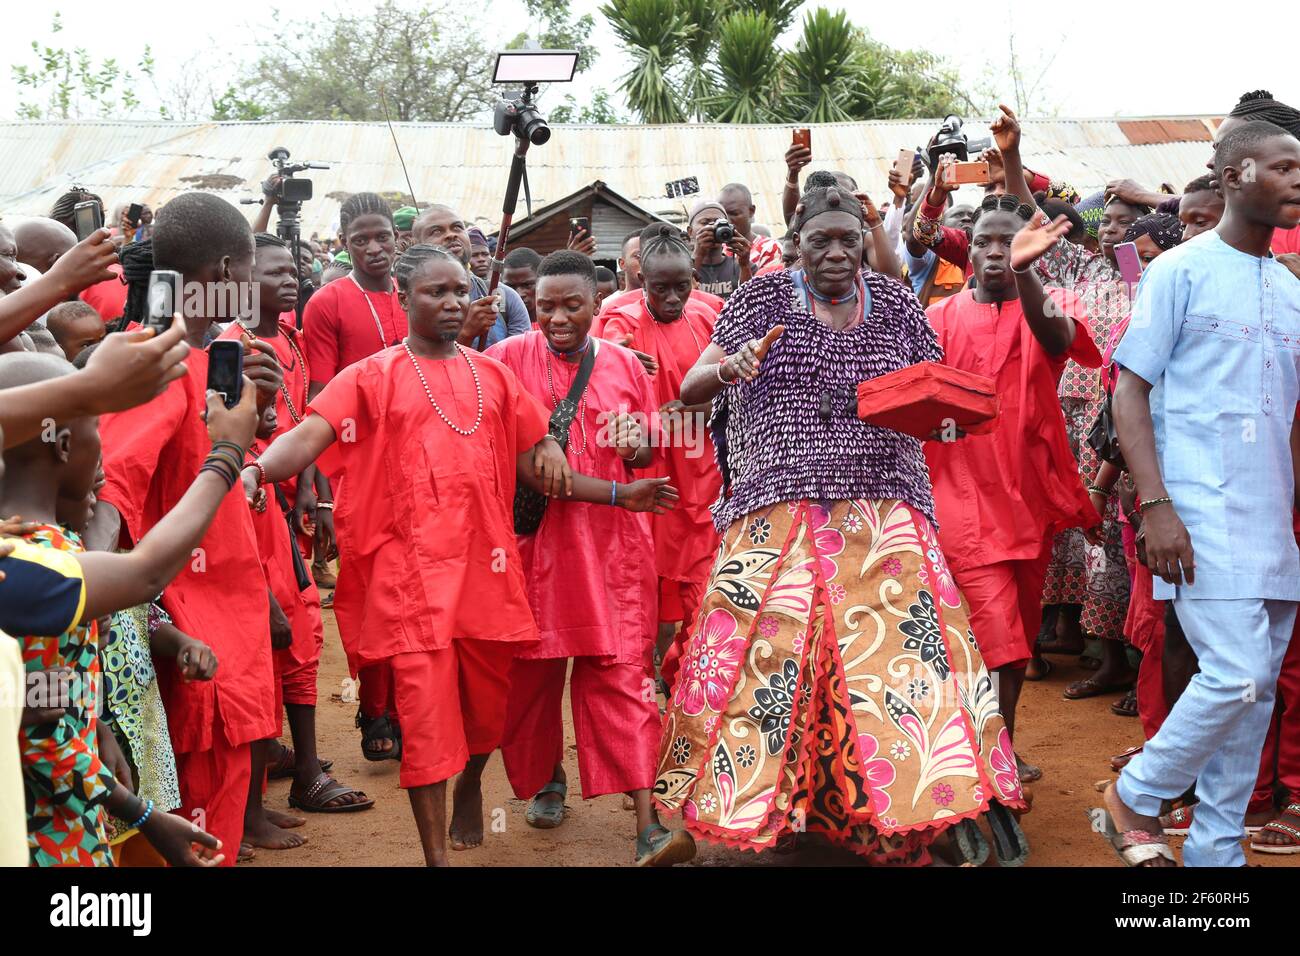 Elégún sängó dirigeant les adorateurs de Sango dans la prière depuis le temple de Koso à travers le canton d'Oyo pendant le Festival mondial de Sango, État d'Oyo, Nigeria. Banque D'Images